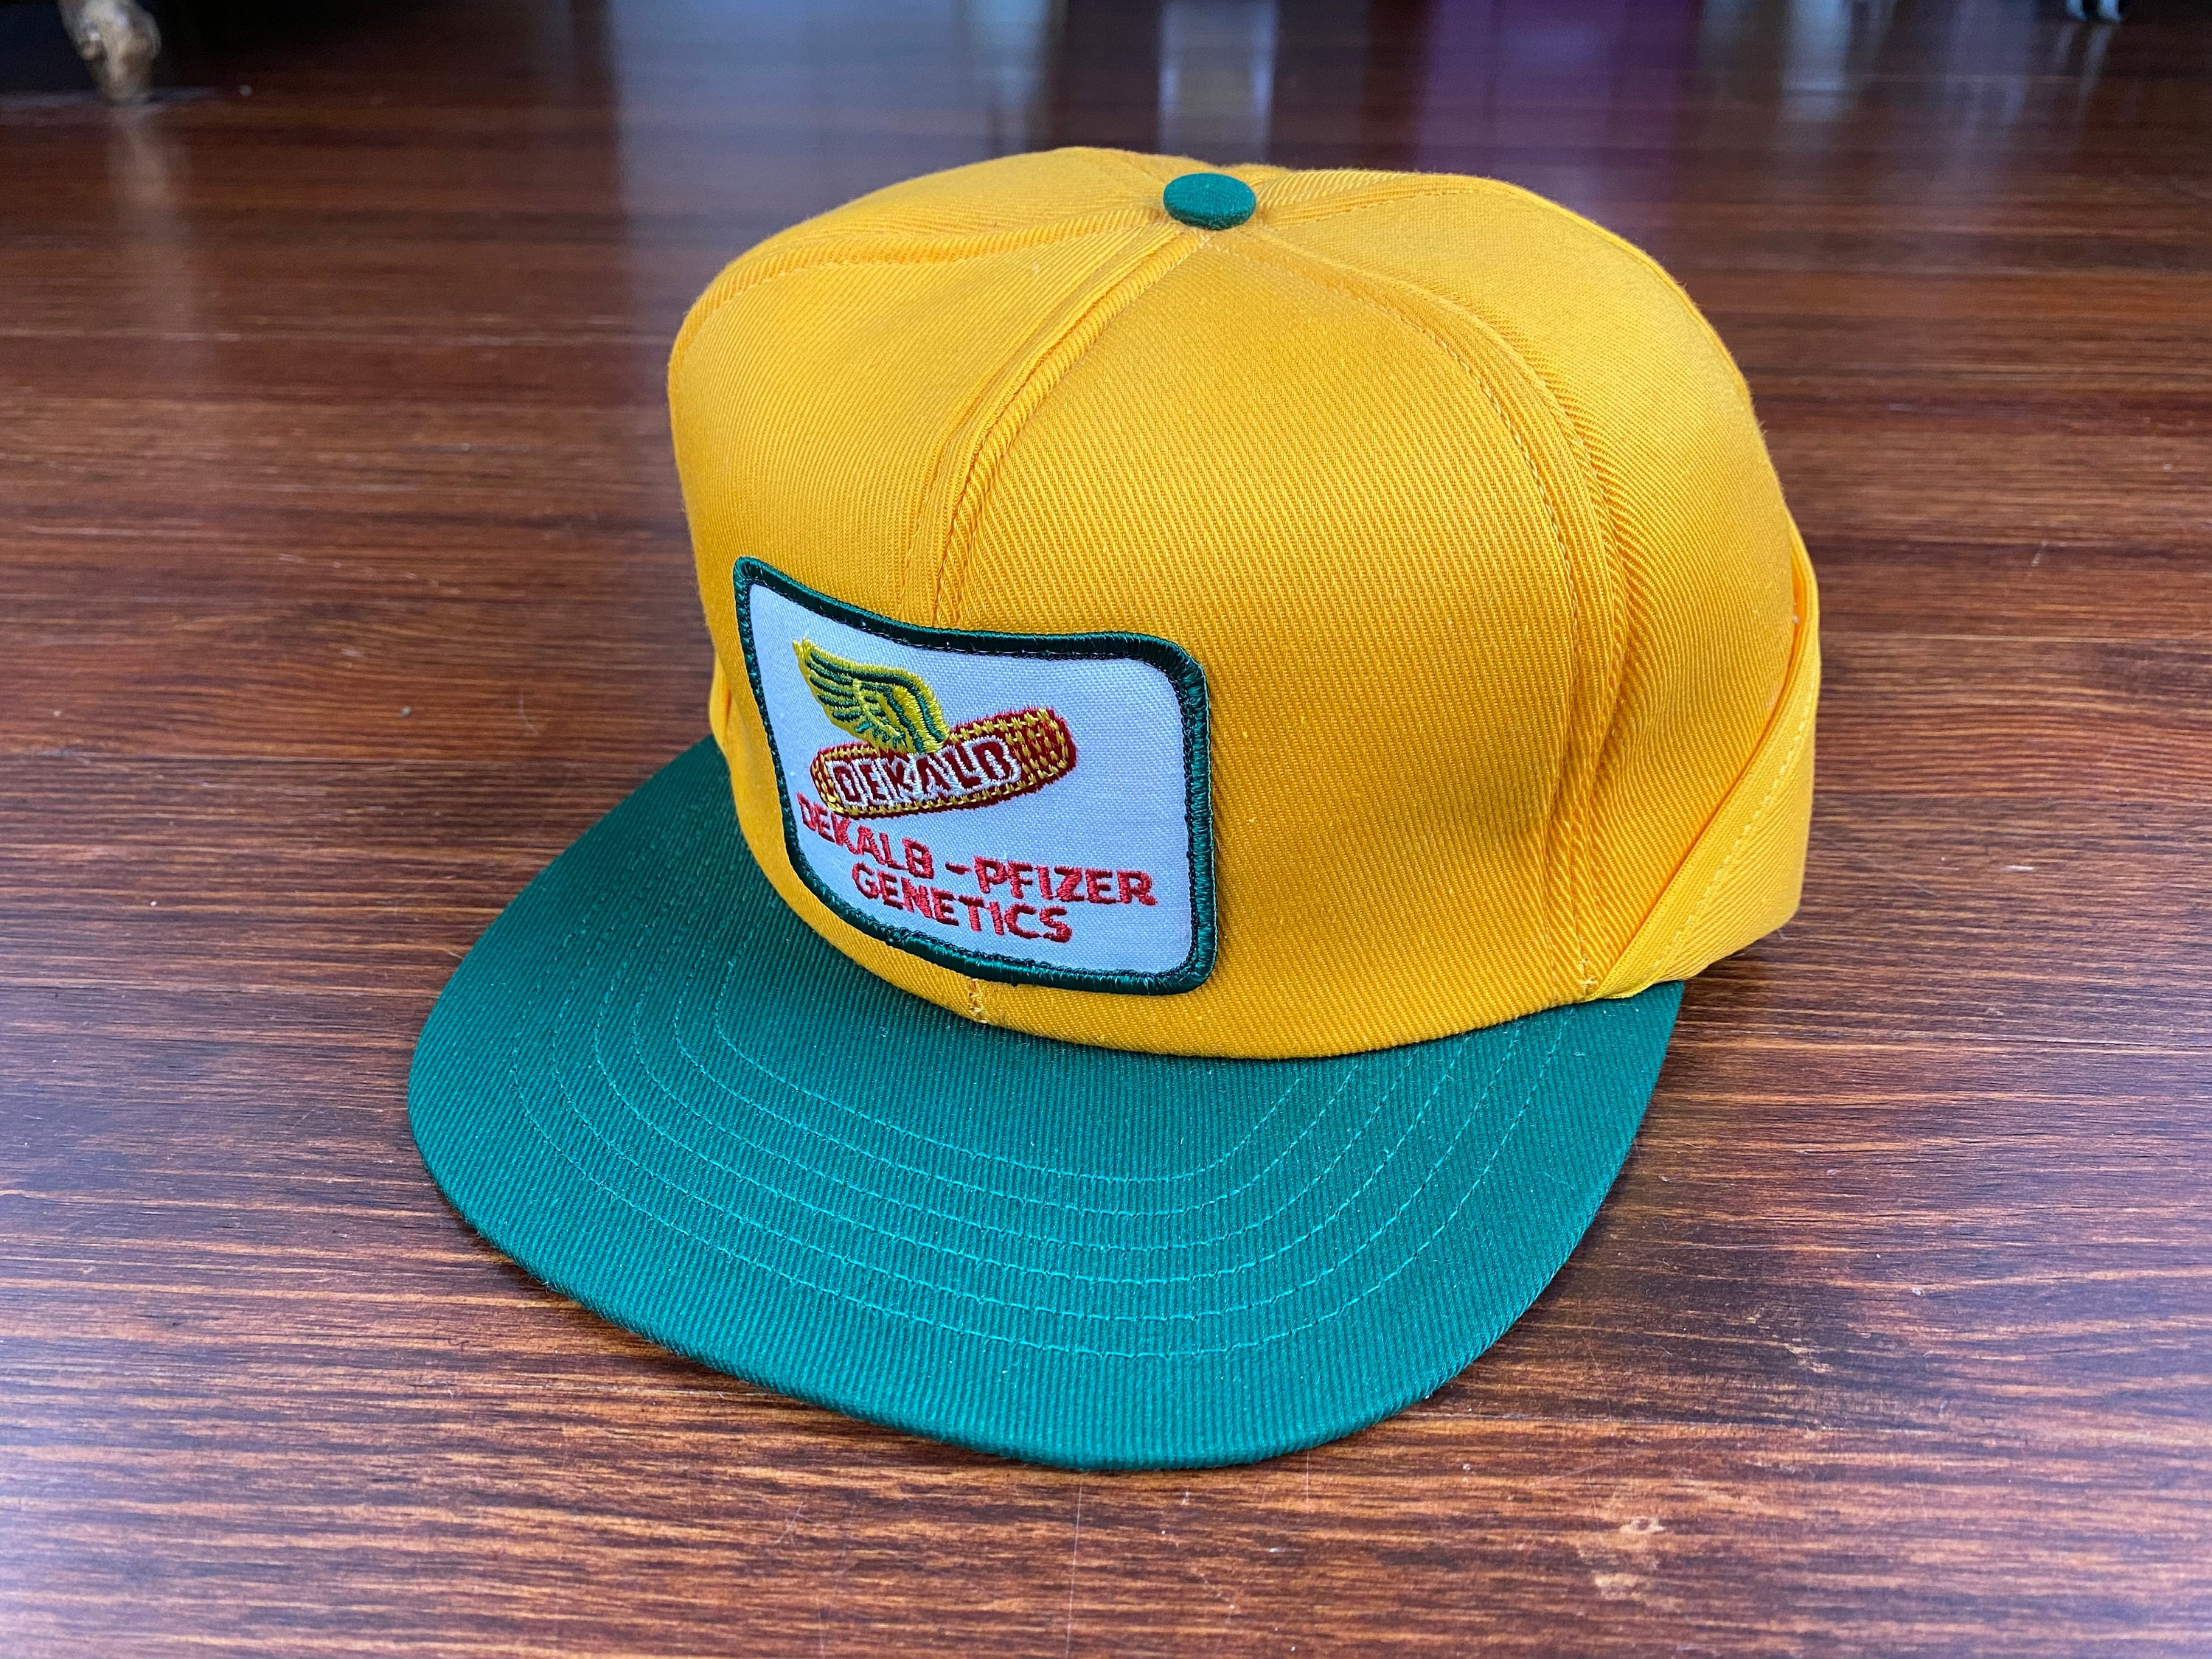 Vintage Dekalb hat 80s dekalb trucker hat dekalb ear flap hat | Etsy